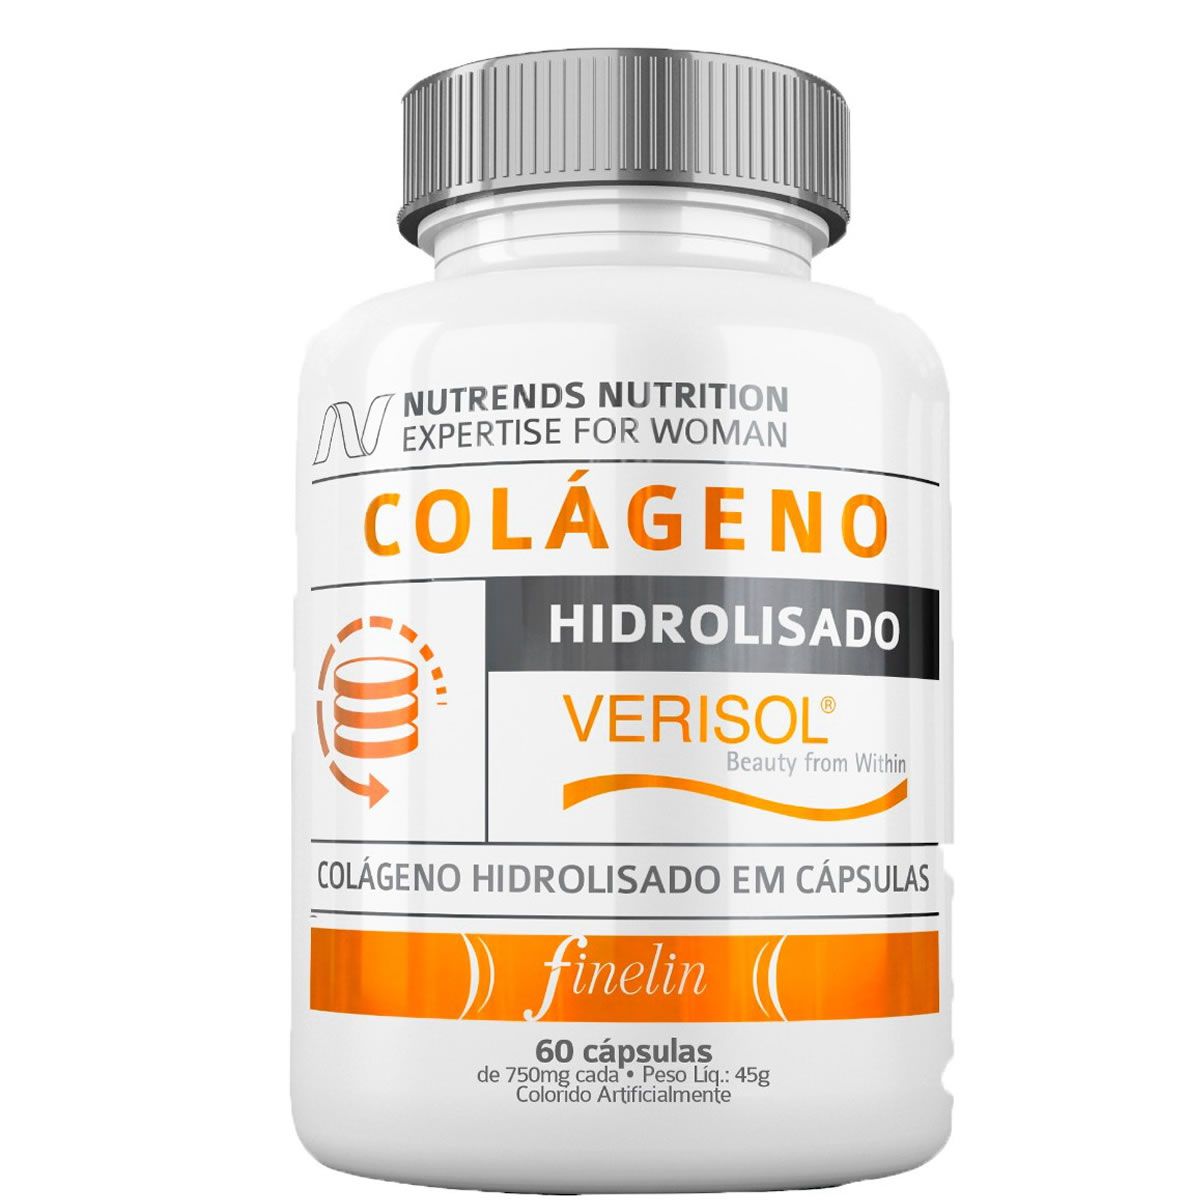 Colageno Verisol Premium 60 Cápsulas - Nutrends 